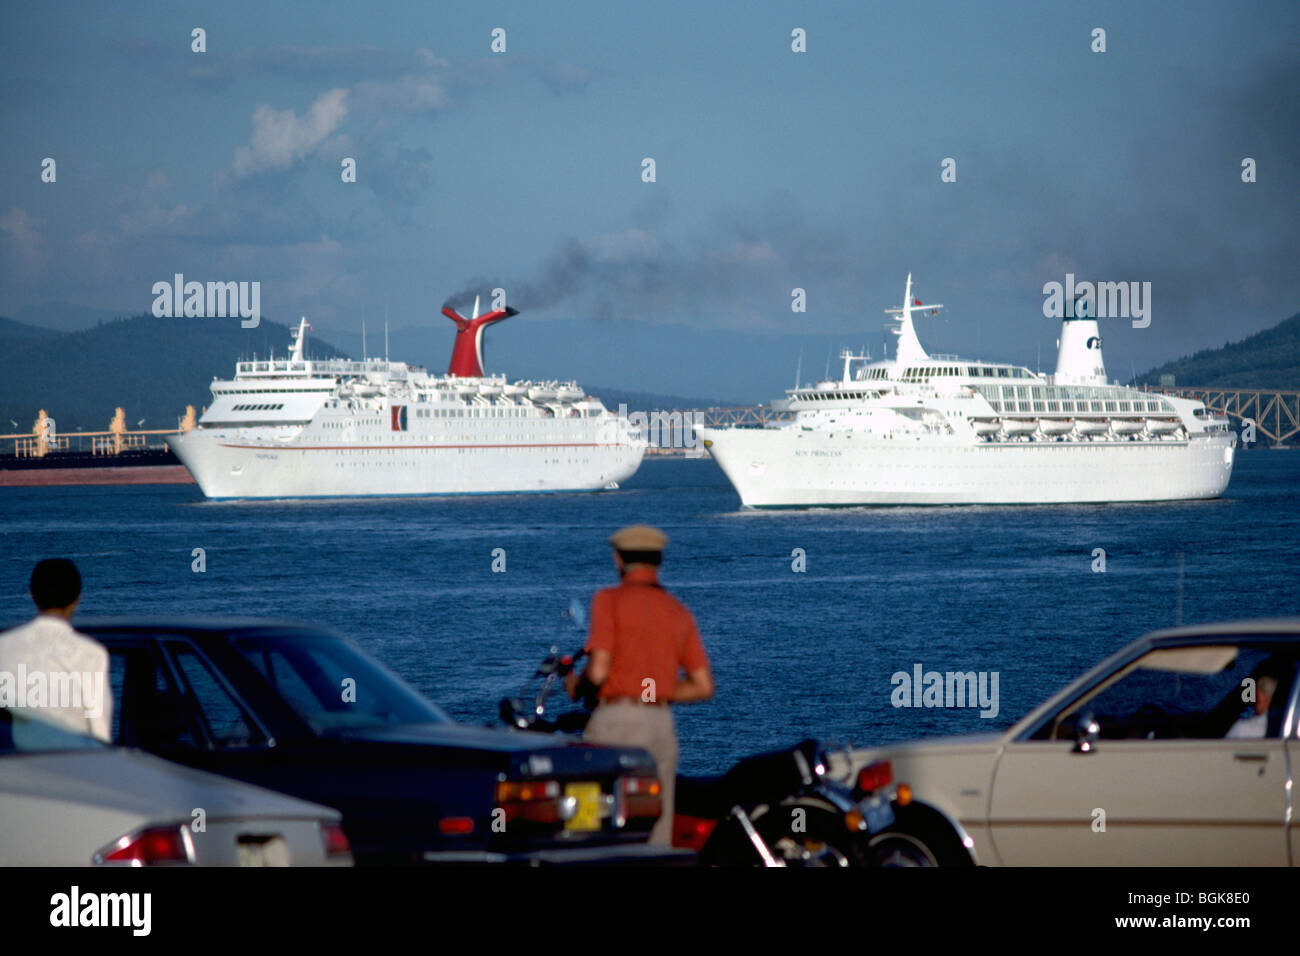 Kreuzfahrtschiffe im Hafen von Vancouver Hafen verlassen / Hafen, BC, Britisch-Kolumbien, Kanada - Burrard Inlet Stockfoto